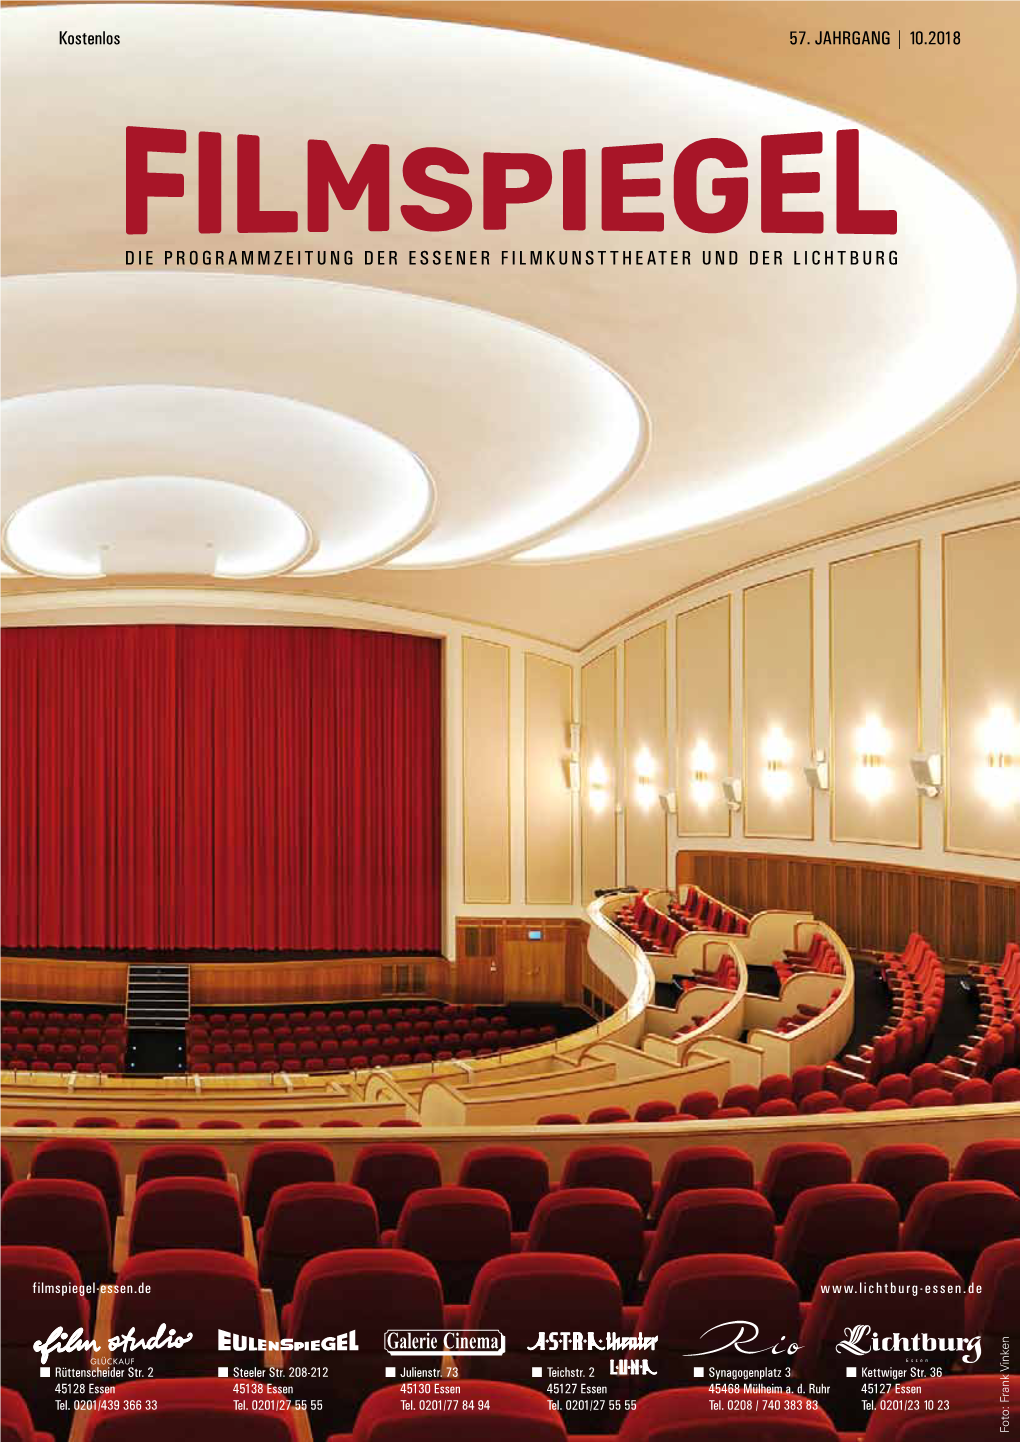 Die Programmzeitung Der Essener Filmkunsttheater Und Der Lichtburg